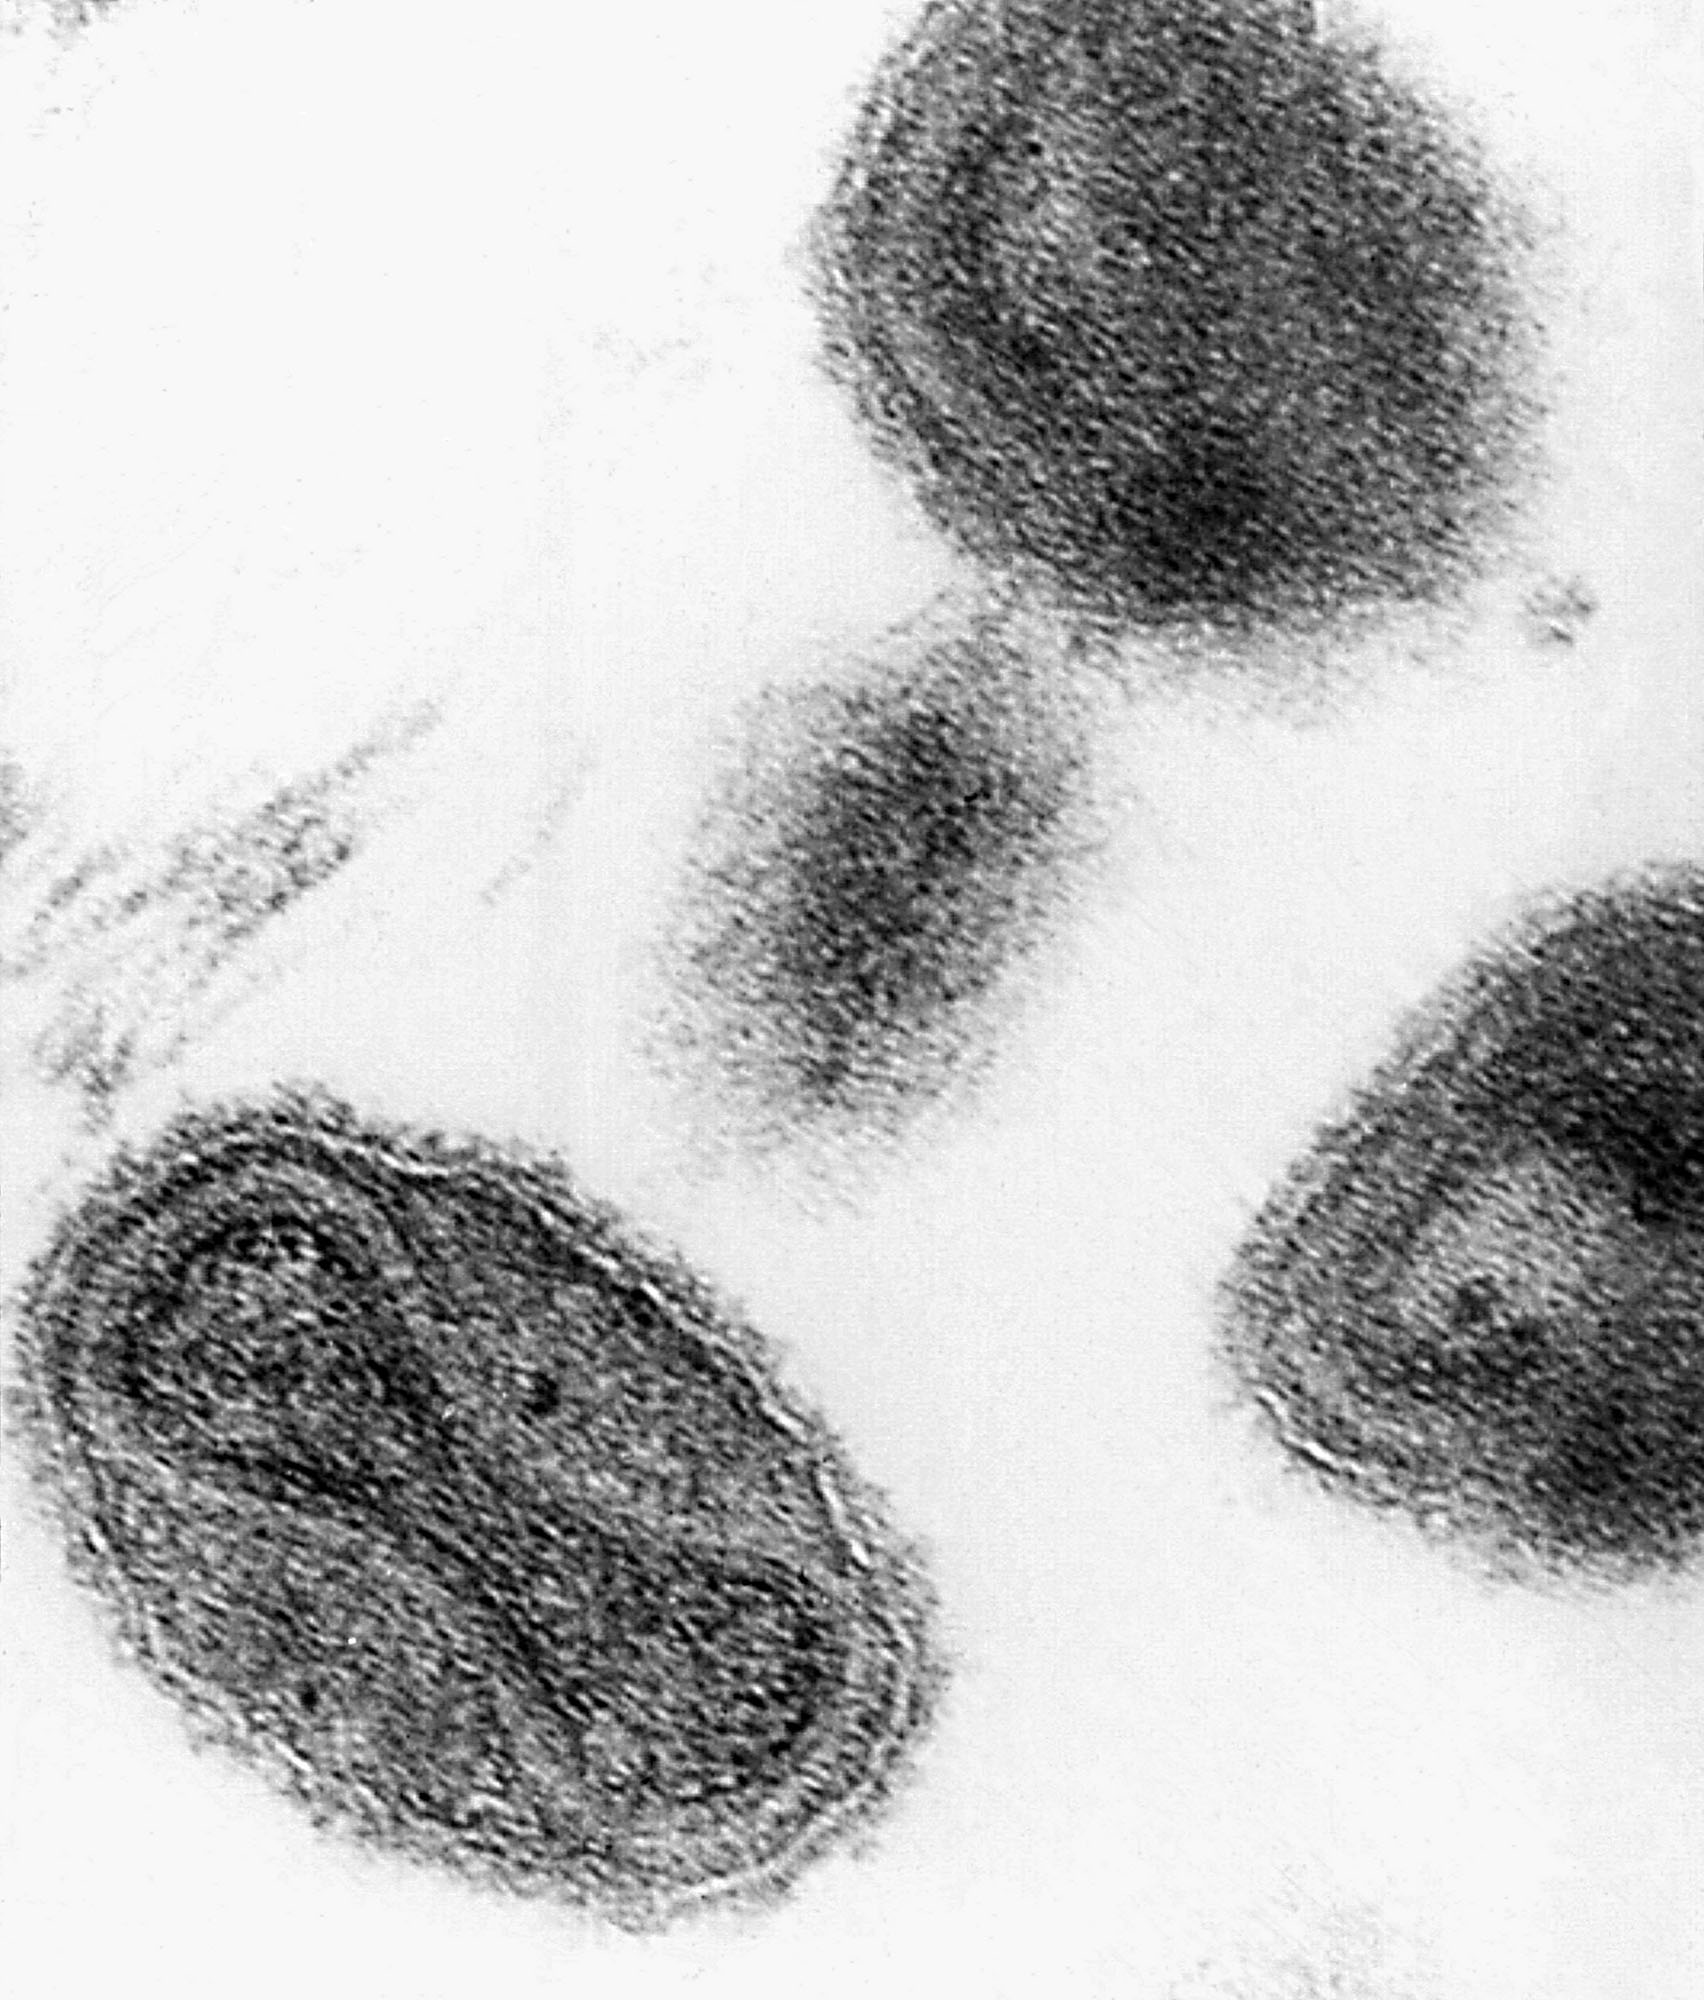 Ξεχασμένα φιαλίδια με τον ιό της ευλογιάς βρέθηκαν σε αμερικανικό εργαστήριο